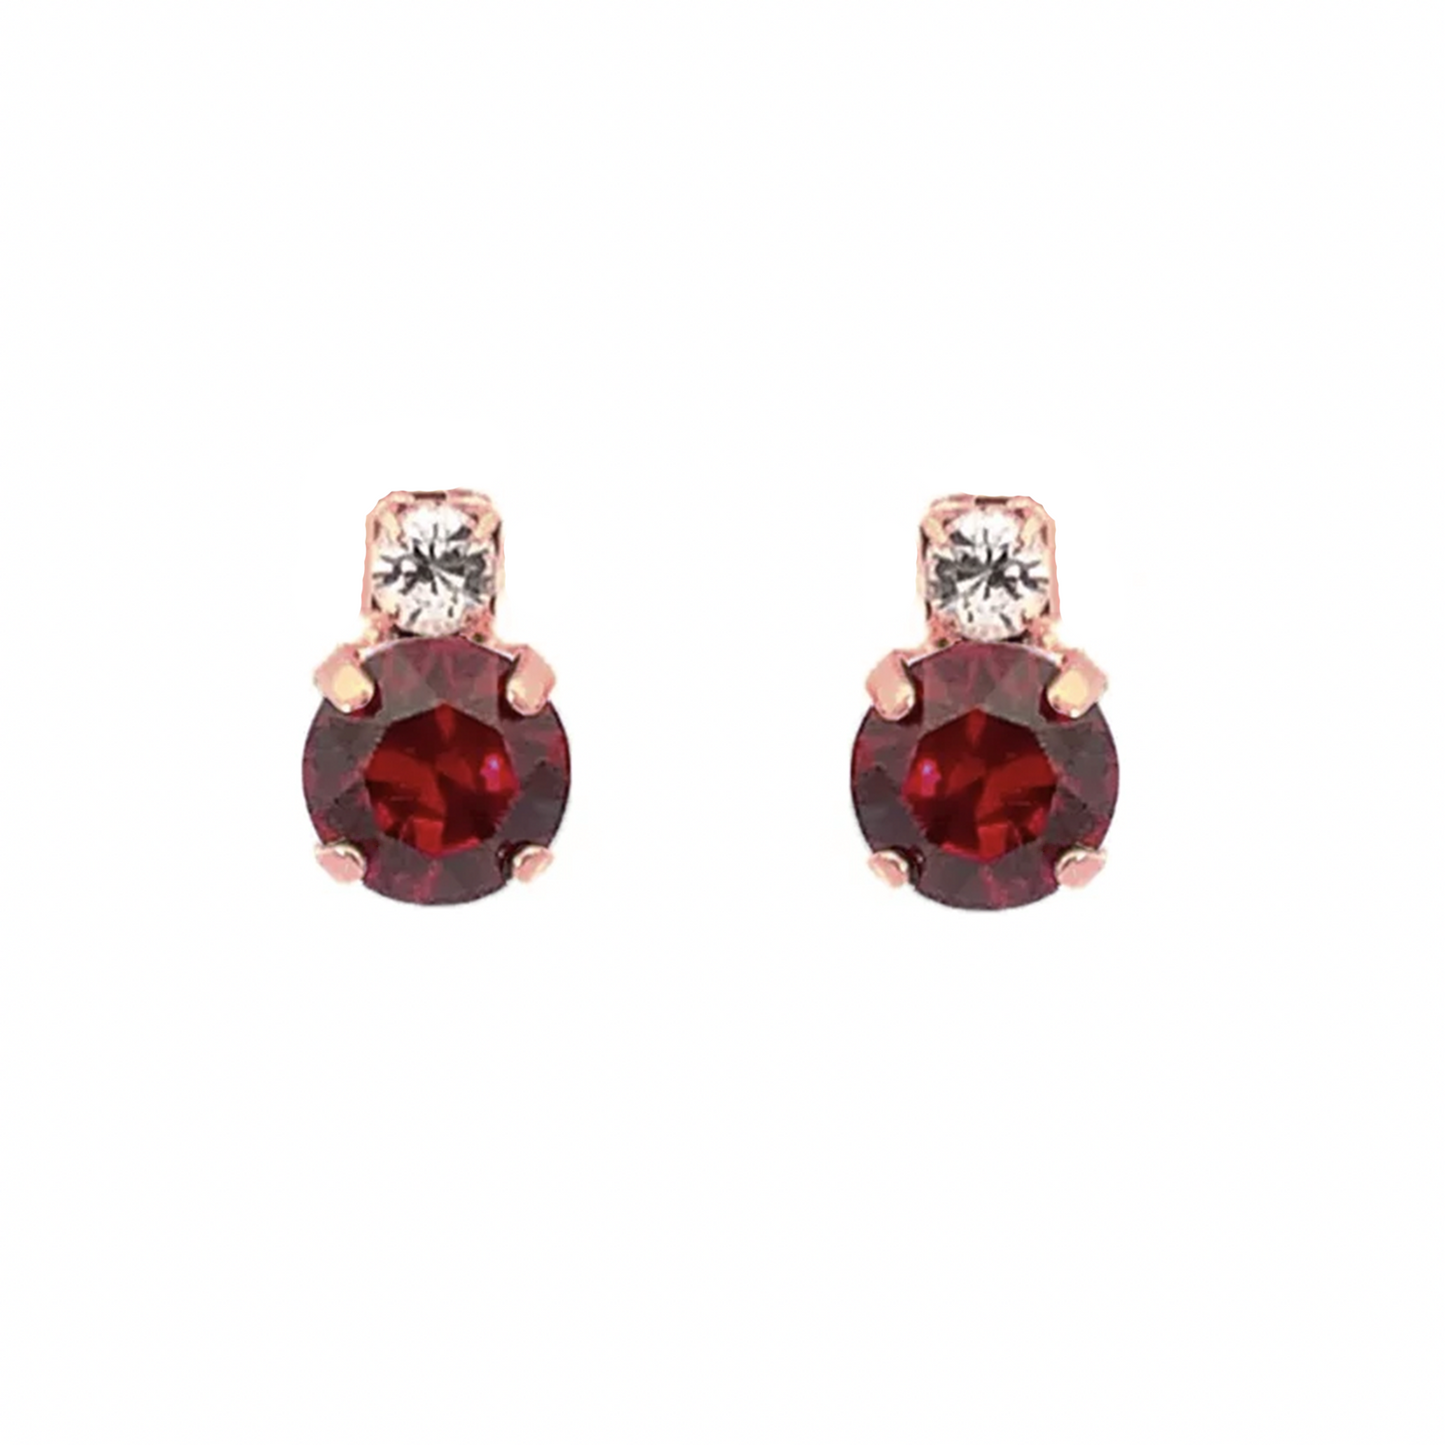 Garnet stud earrings rose gold